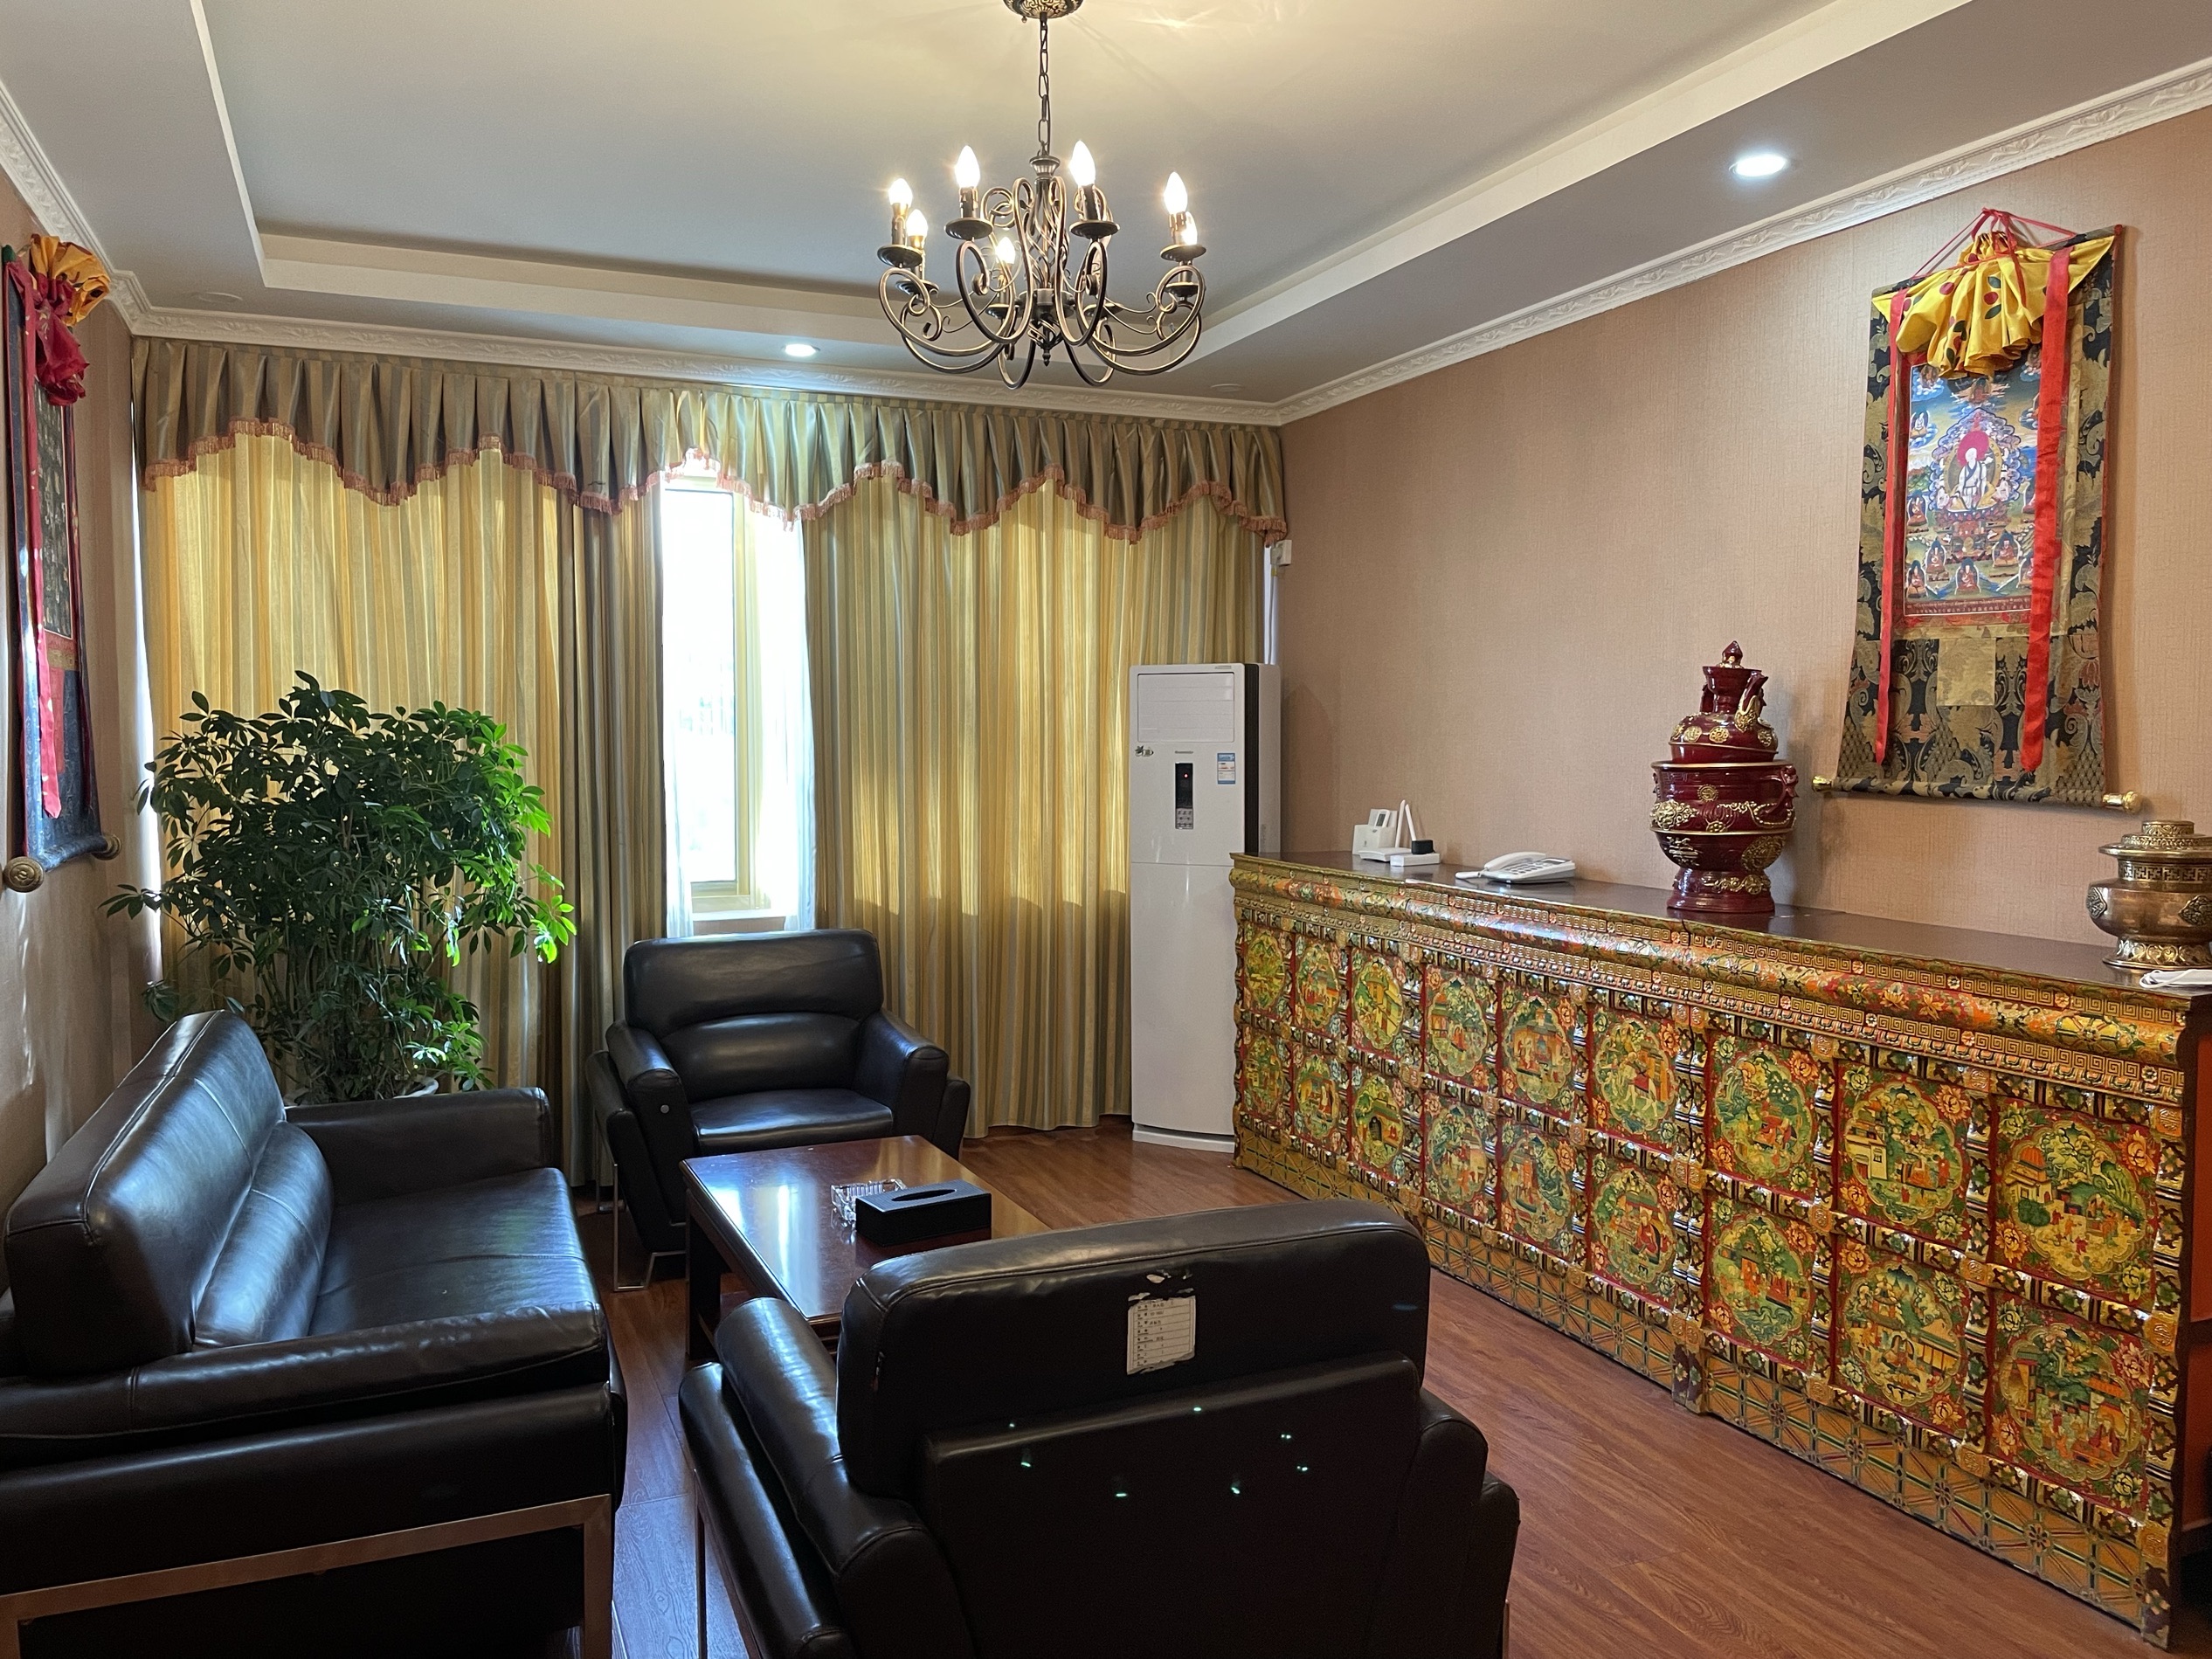 萨迦寺附近最好的酒店了，每间都有立式空调，房间干净整洁舒适，服务员很友善，下次来还会选择这里。